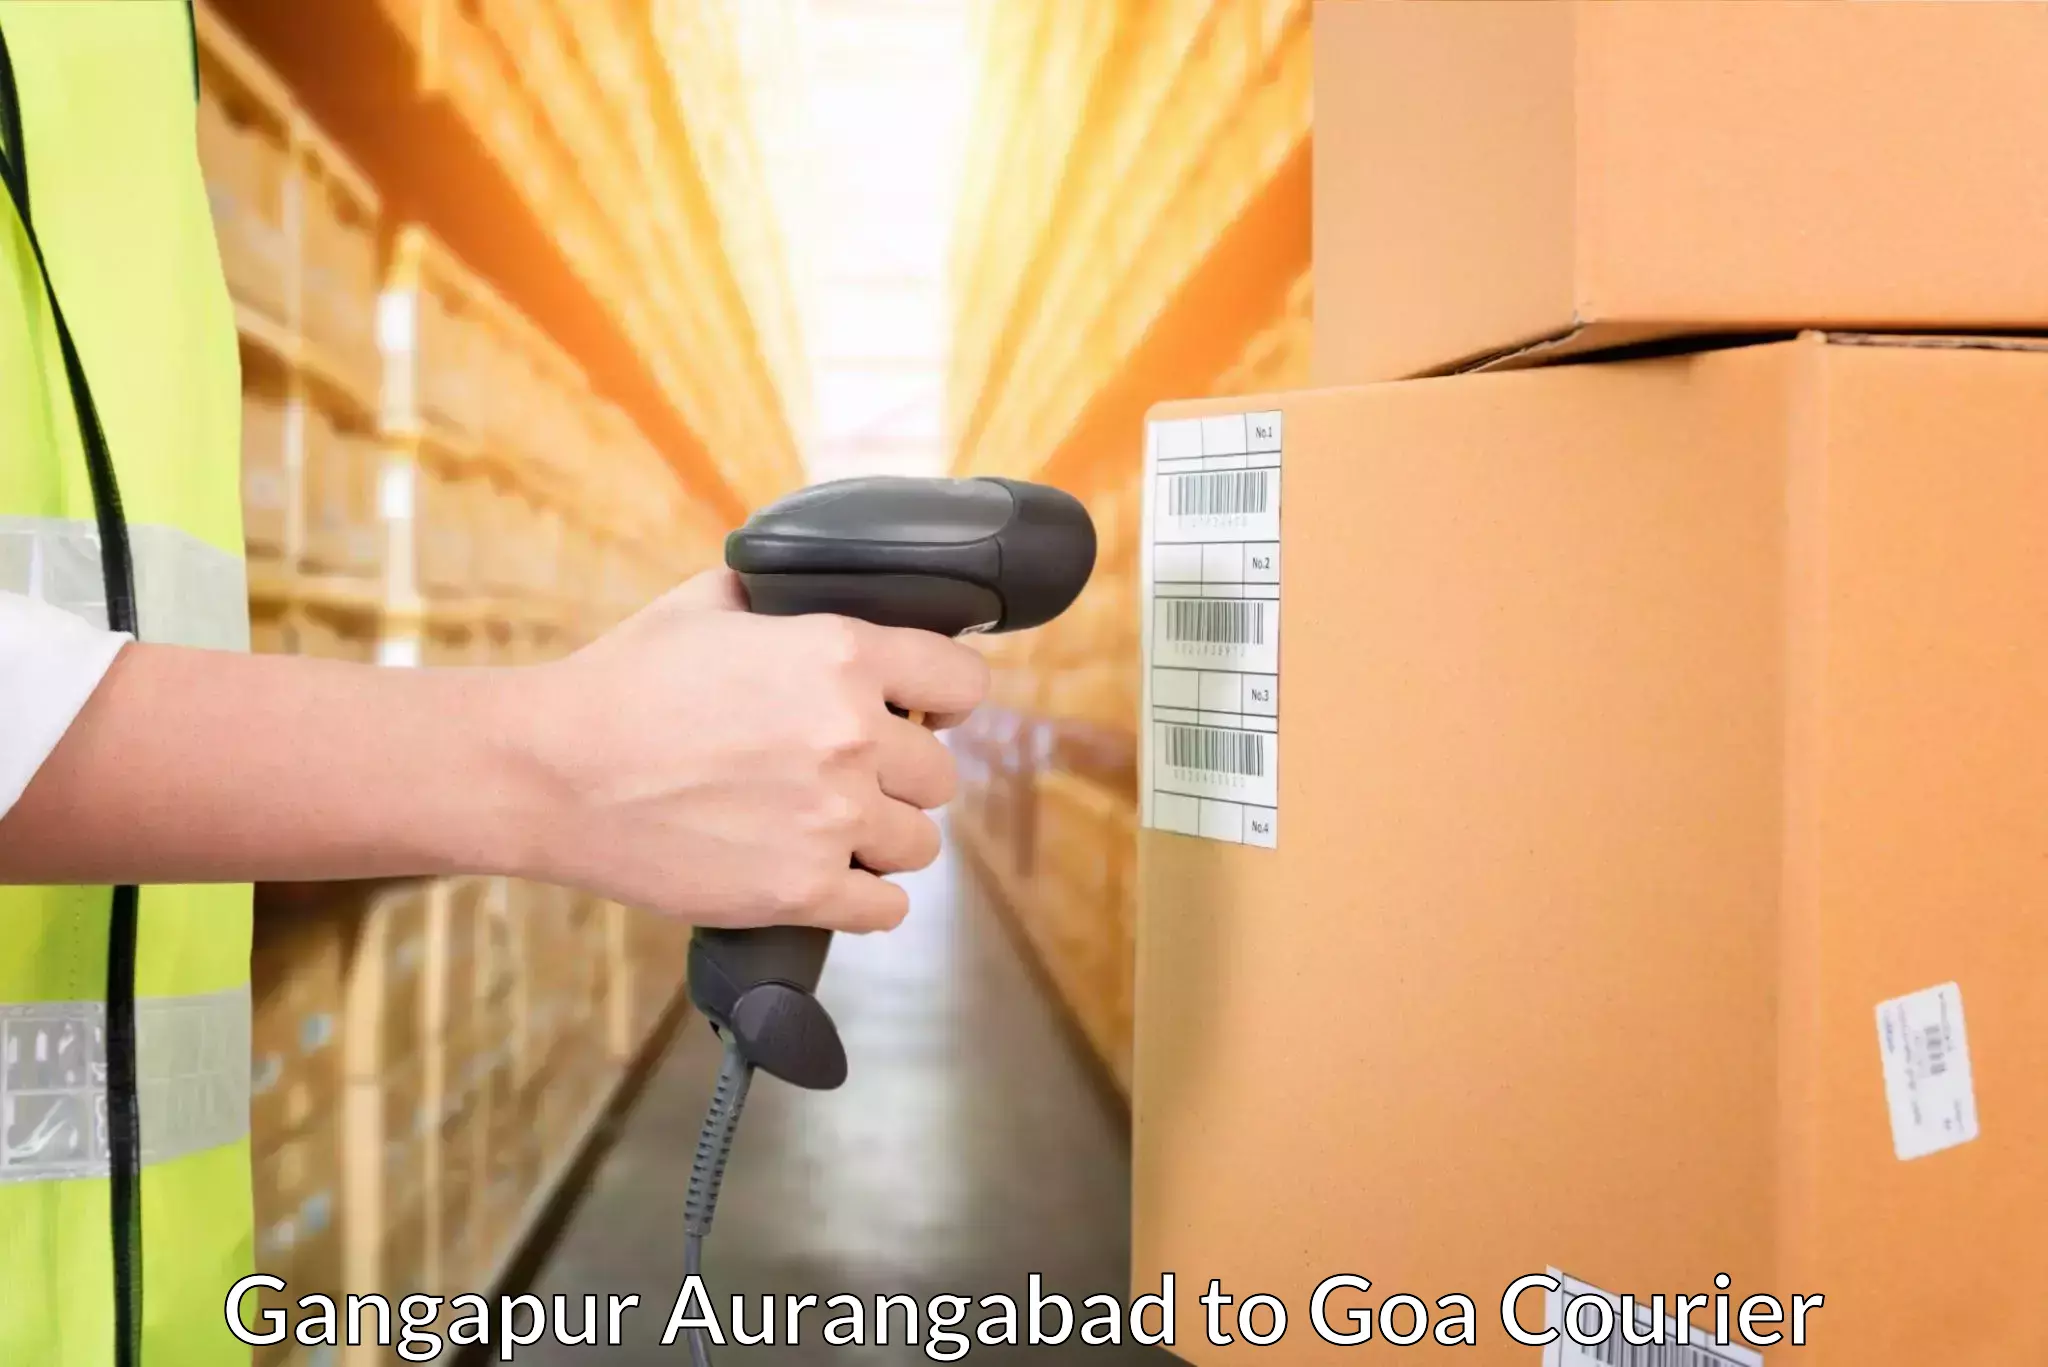 Door-to-door freight service Gangapur Aurangabad to Panjim